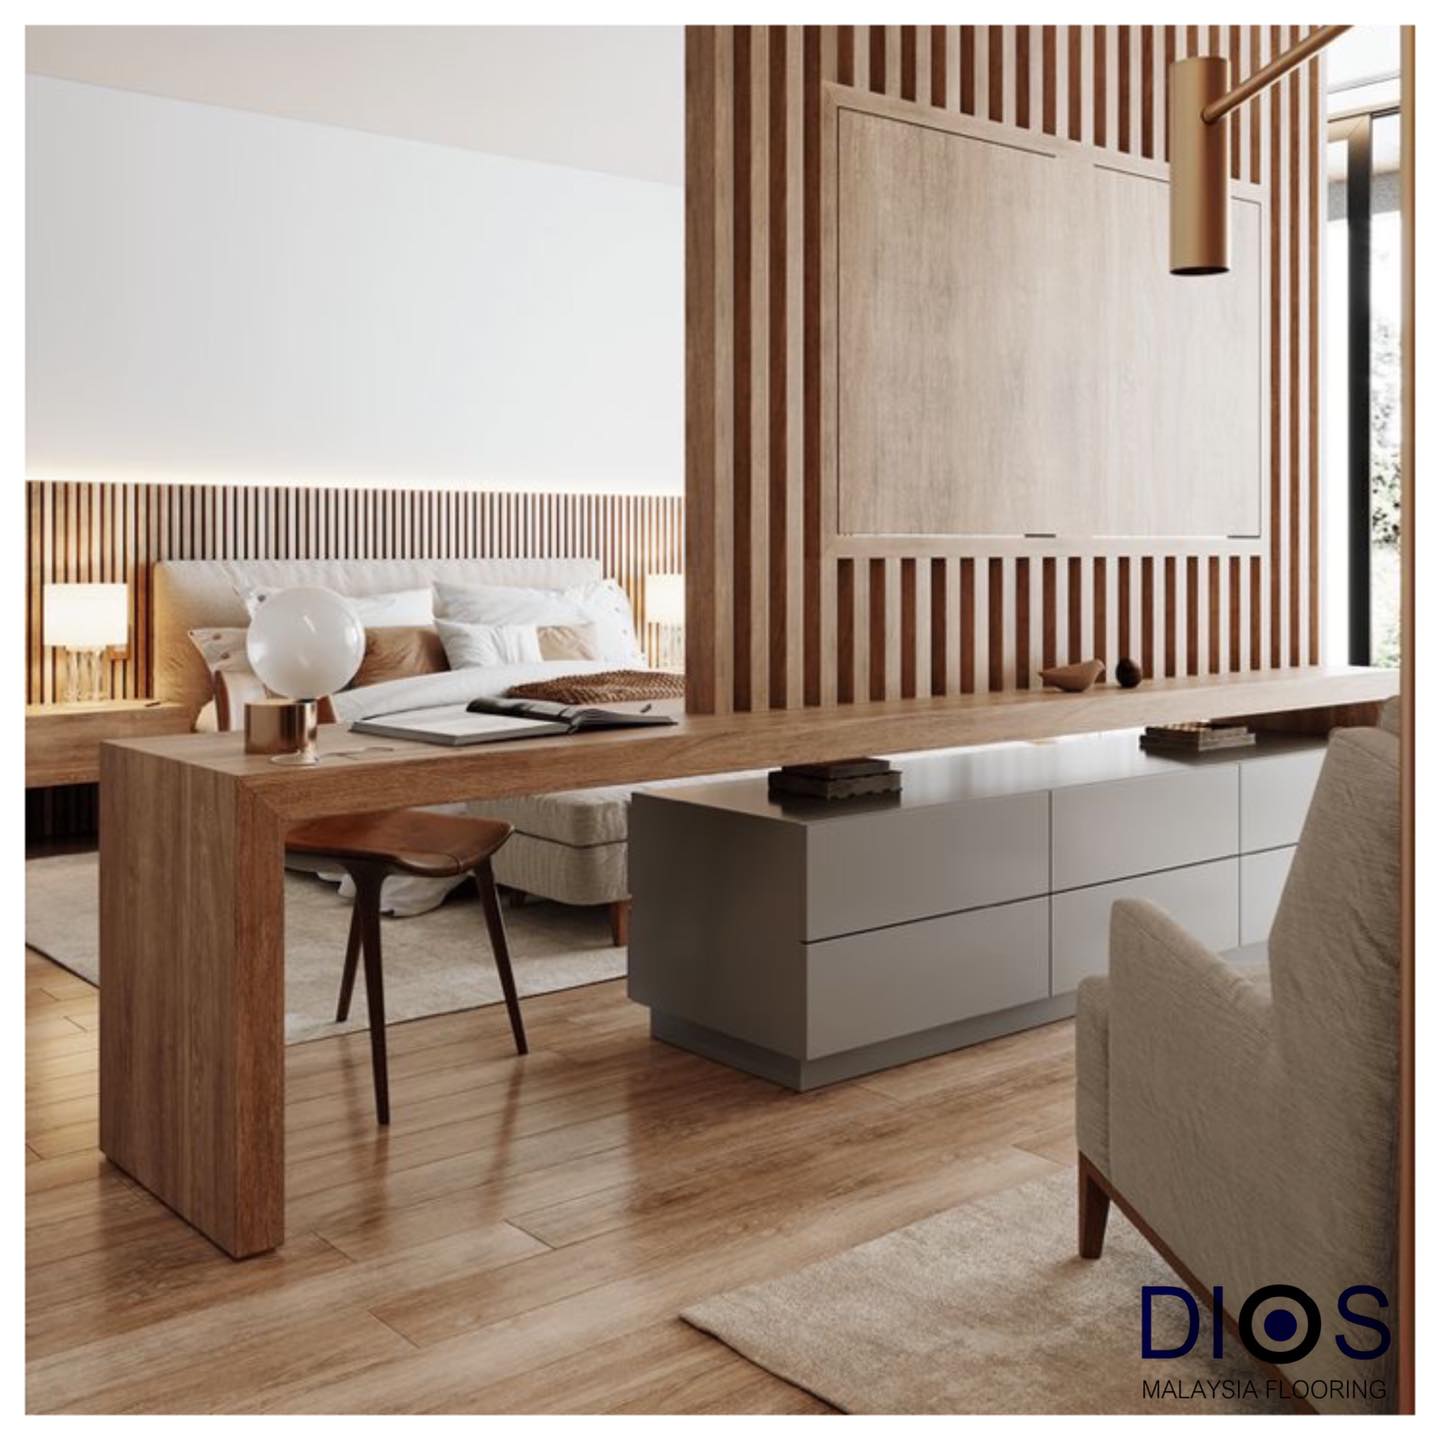 Sàn gỗ DIOS xuất xứ từ Malaysia có khả năng chịu lực tốt, phù hợp với khí hậu Việt Nam.